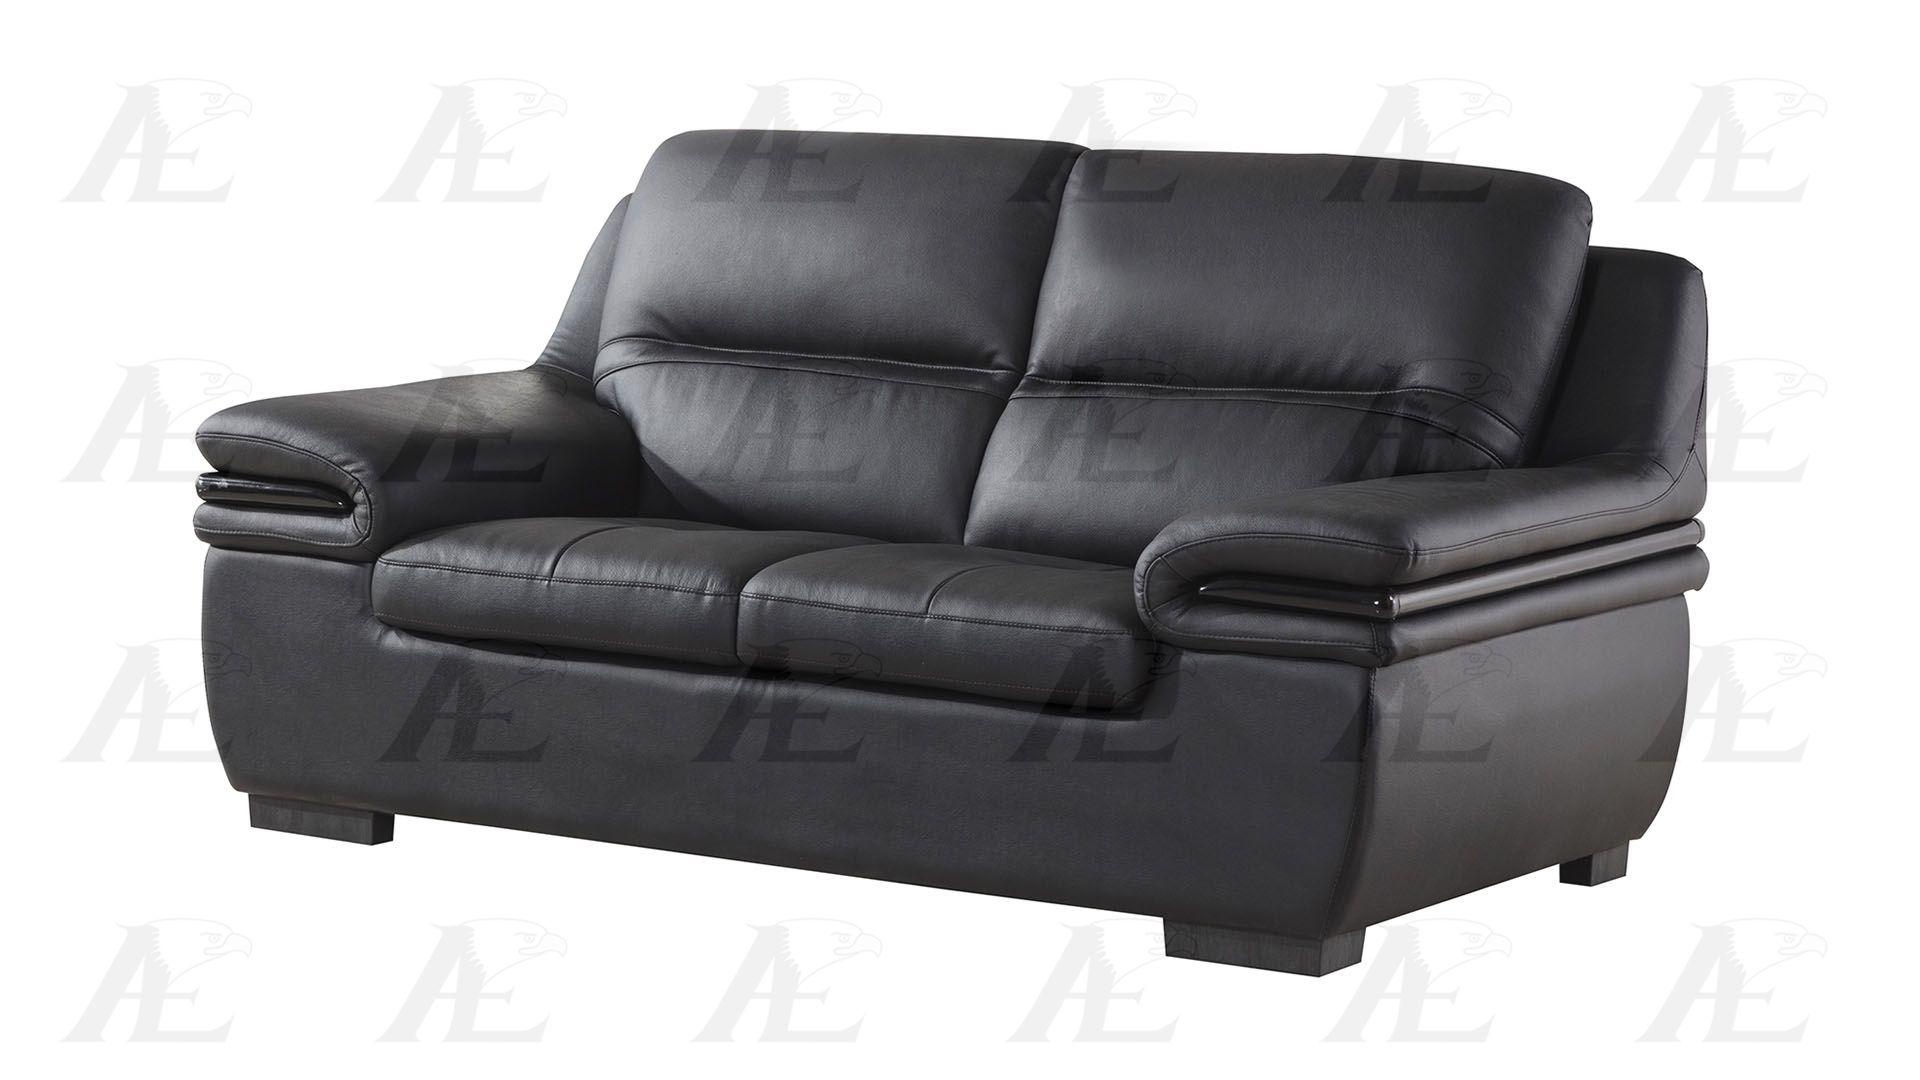 

                    
American Eagle Furniture EK-B113-B Sofa Set Black Genuine Leather Purchase 
